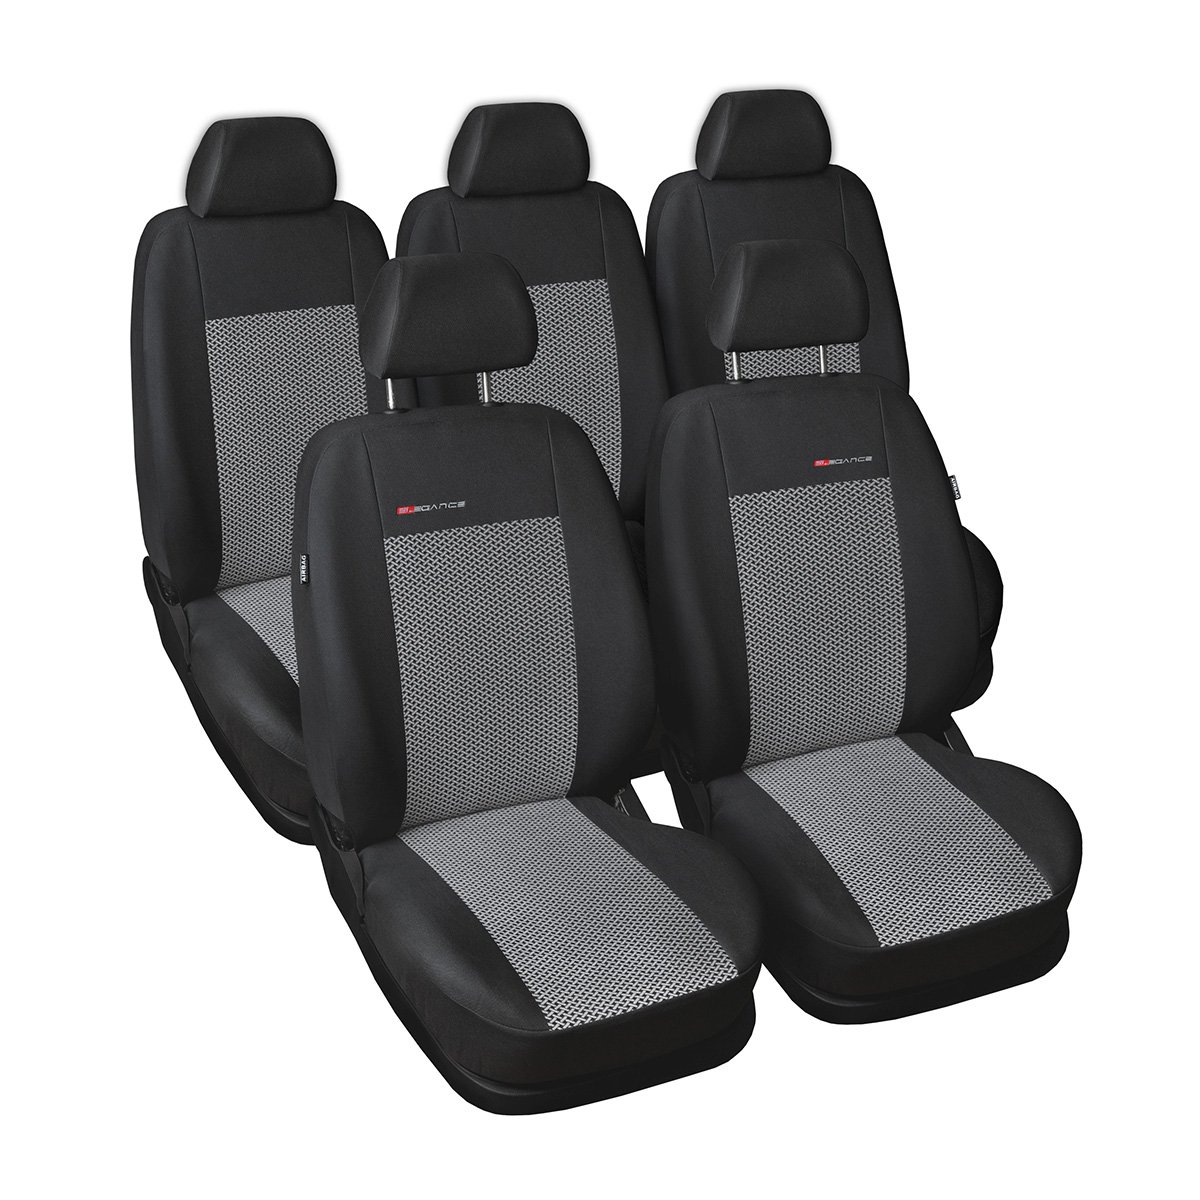 Mossa - Maßgeschneiderte Sitzbezüge Auto kompatibel mit Renault Scenic III MPV (2009-2013) - Autositzbezüge Schonbezüge für Autositze - E2 von Mossa